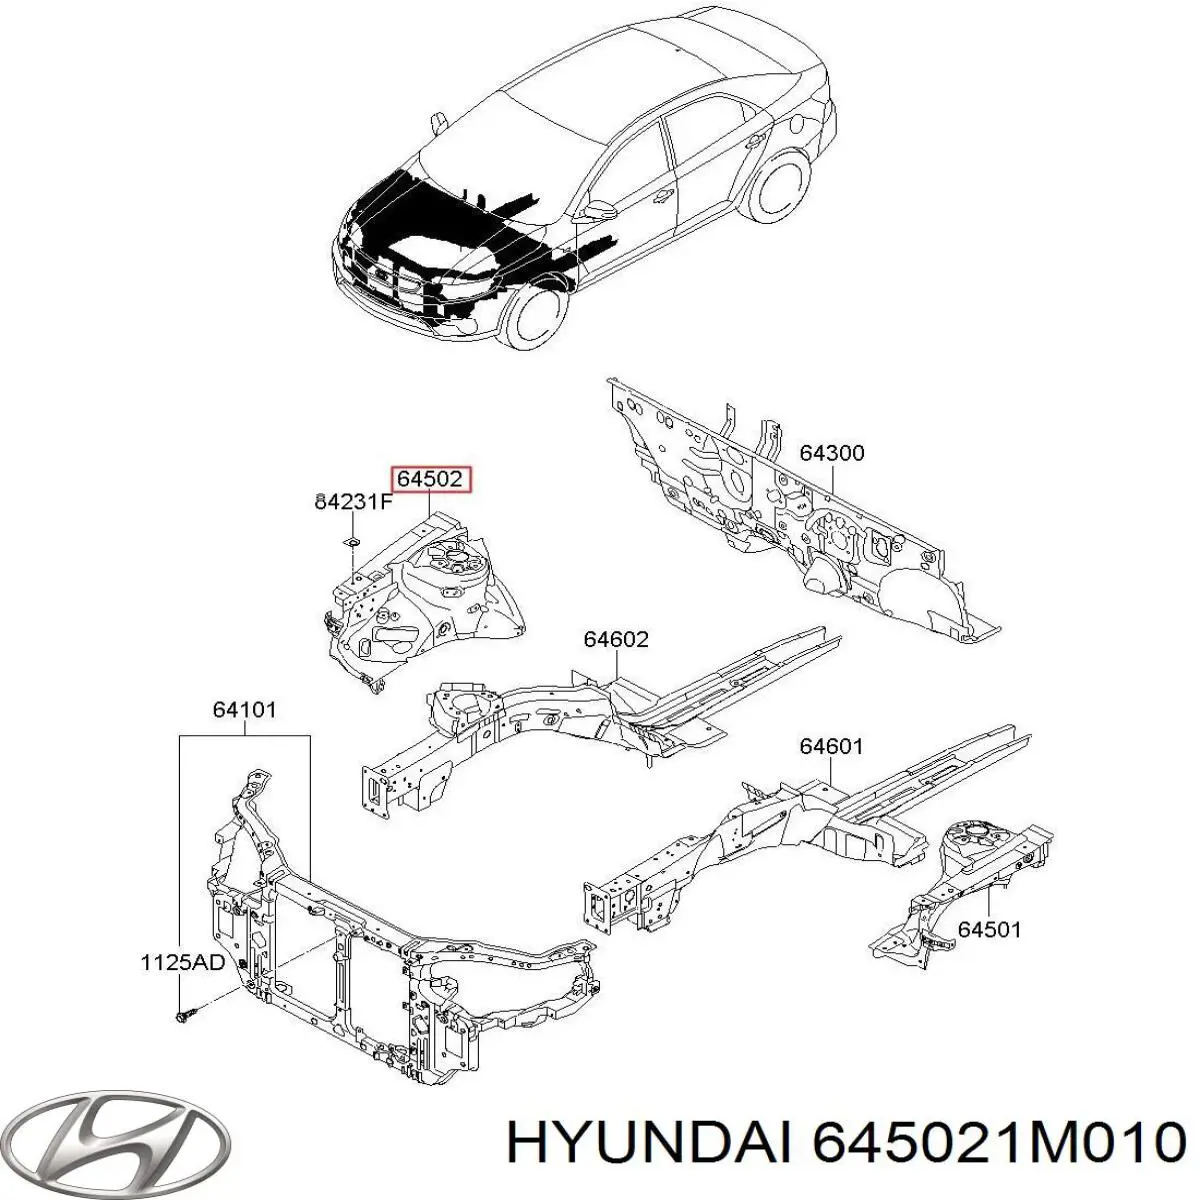 645021M010 Hyundai/Kia arco de rueda, panel lateral, derecho